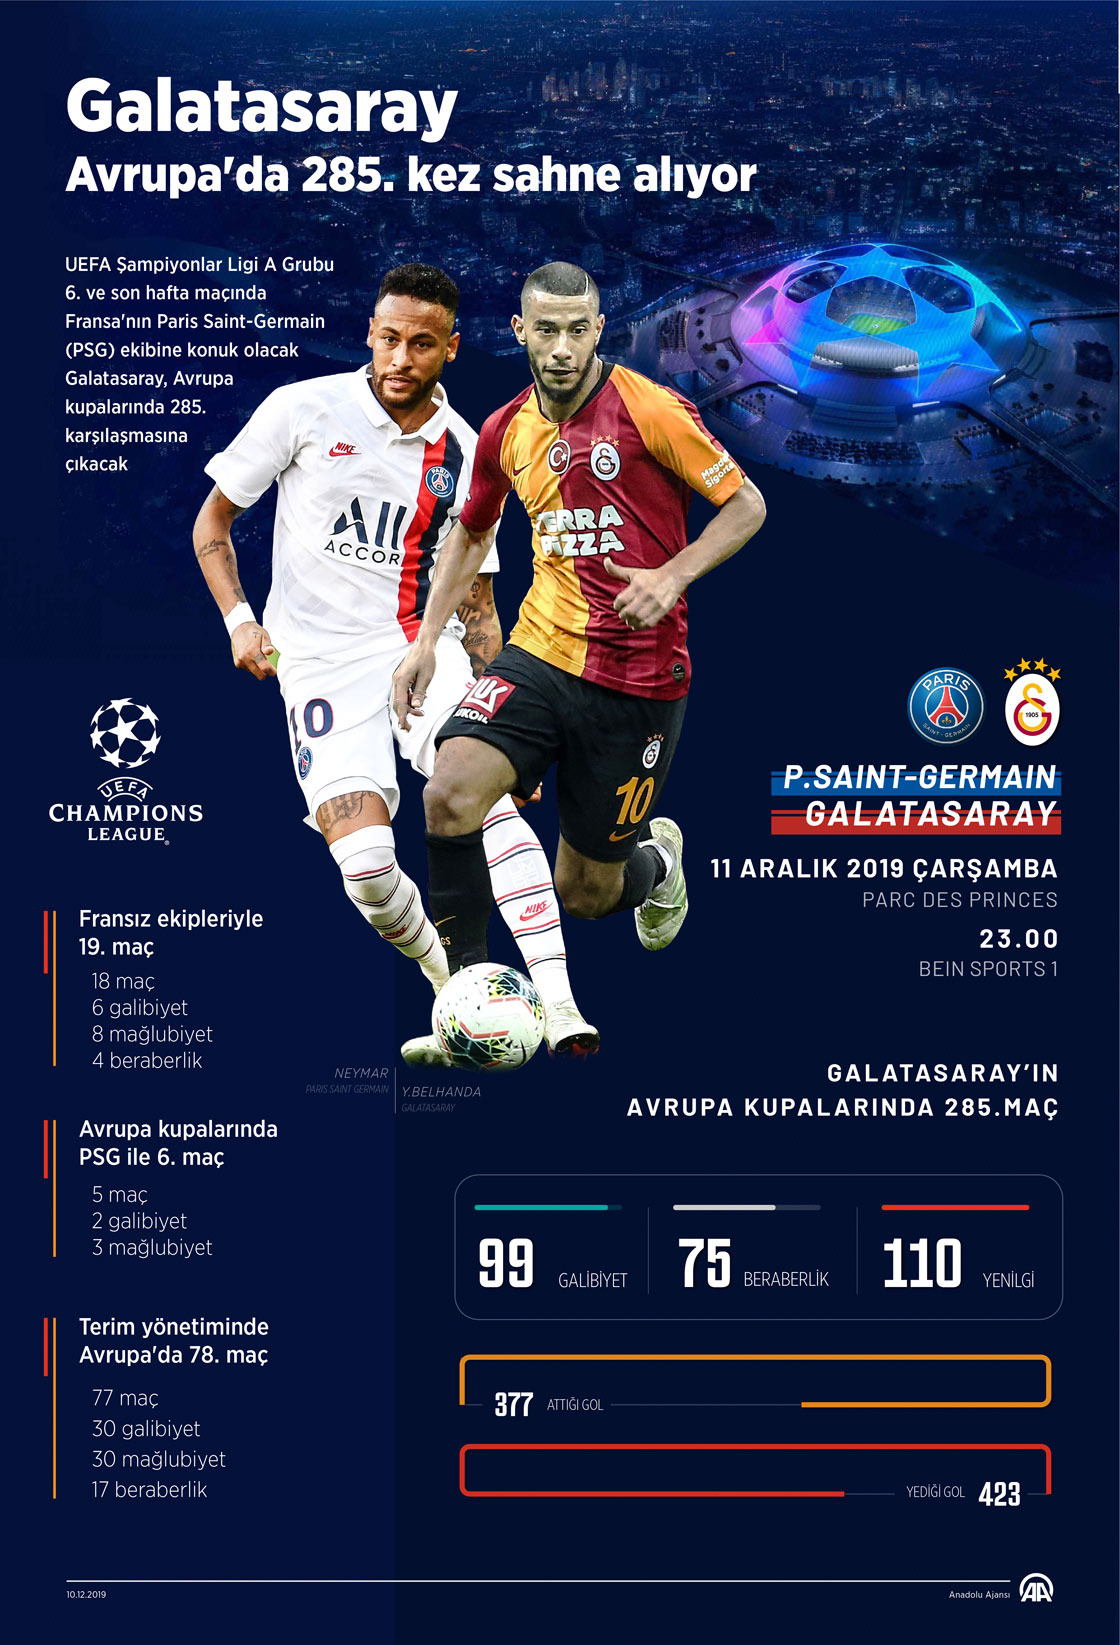  Galatasaray, Avrupa'da 285. kez sahne alıyor